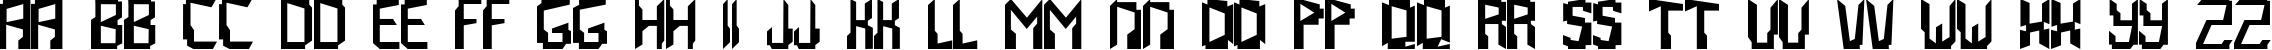 Пример написания английского алфавита шрифтом Abstrakt